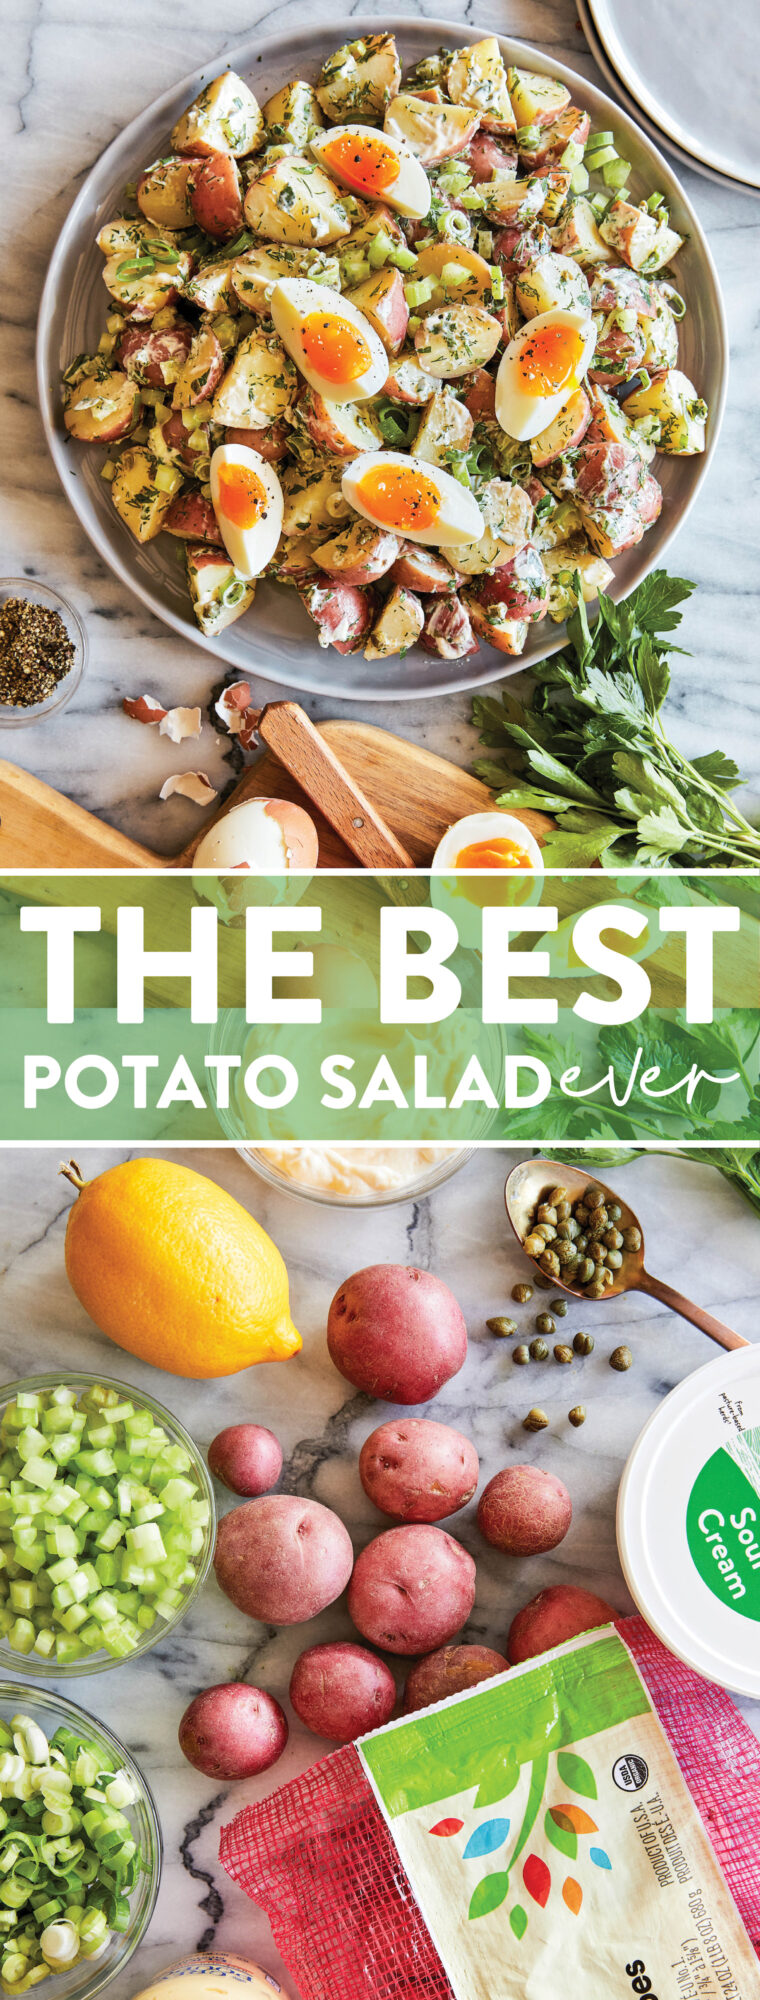 La migliore insalata di patate di sempre - Senza dubbio l'insalata di patate migliore e più cremosa MAI!  E puoi anche farlo in anticipo!  Così facile, così buono.